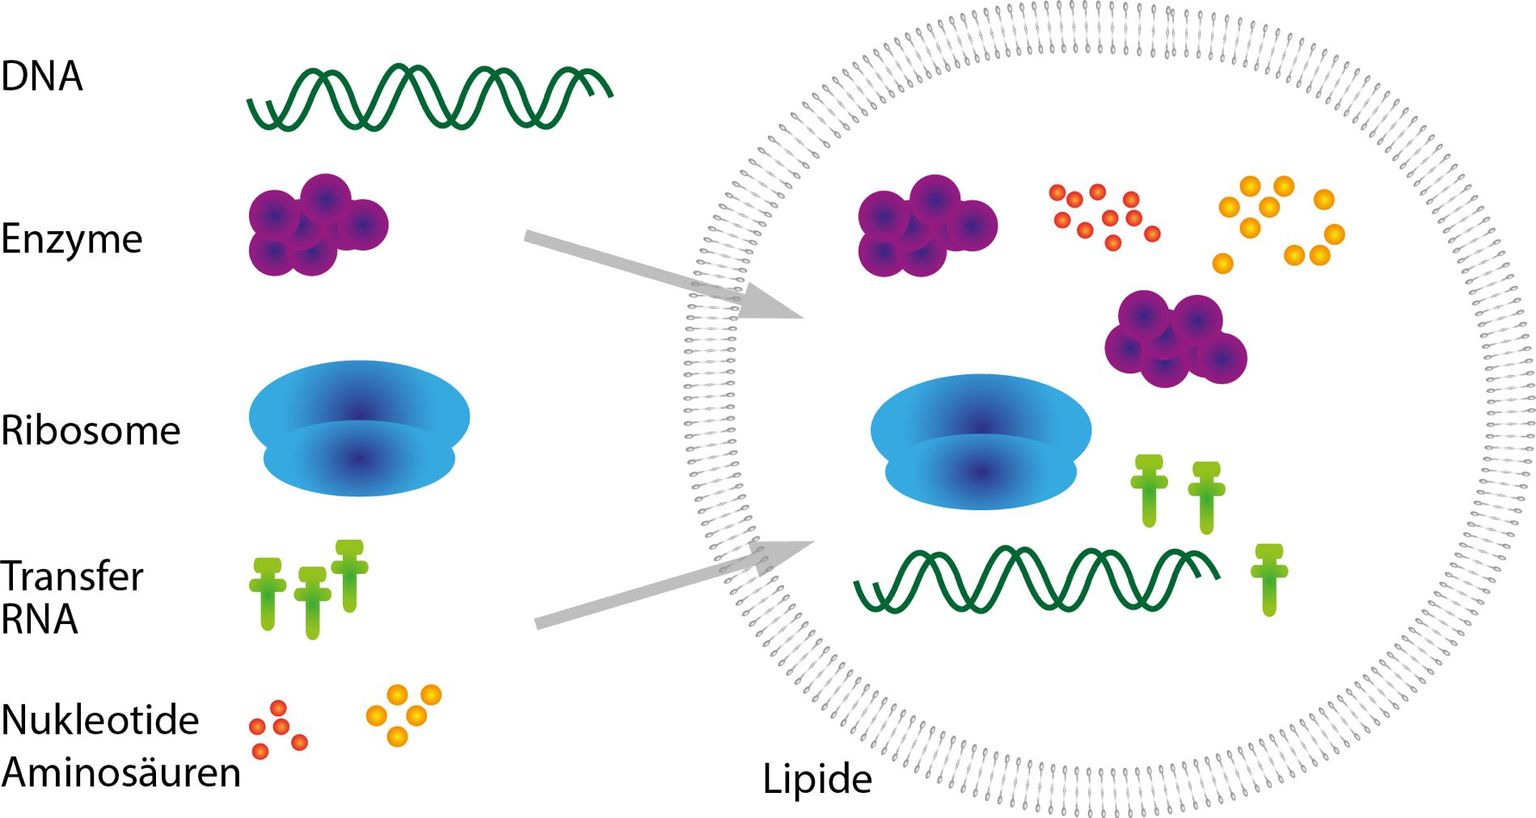 Protozellen: Aus nicht-lebendem Material, insbesondere DNA und Lipiden, sollen dereinst lebende Zellen im Labor hergestellt werden können.